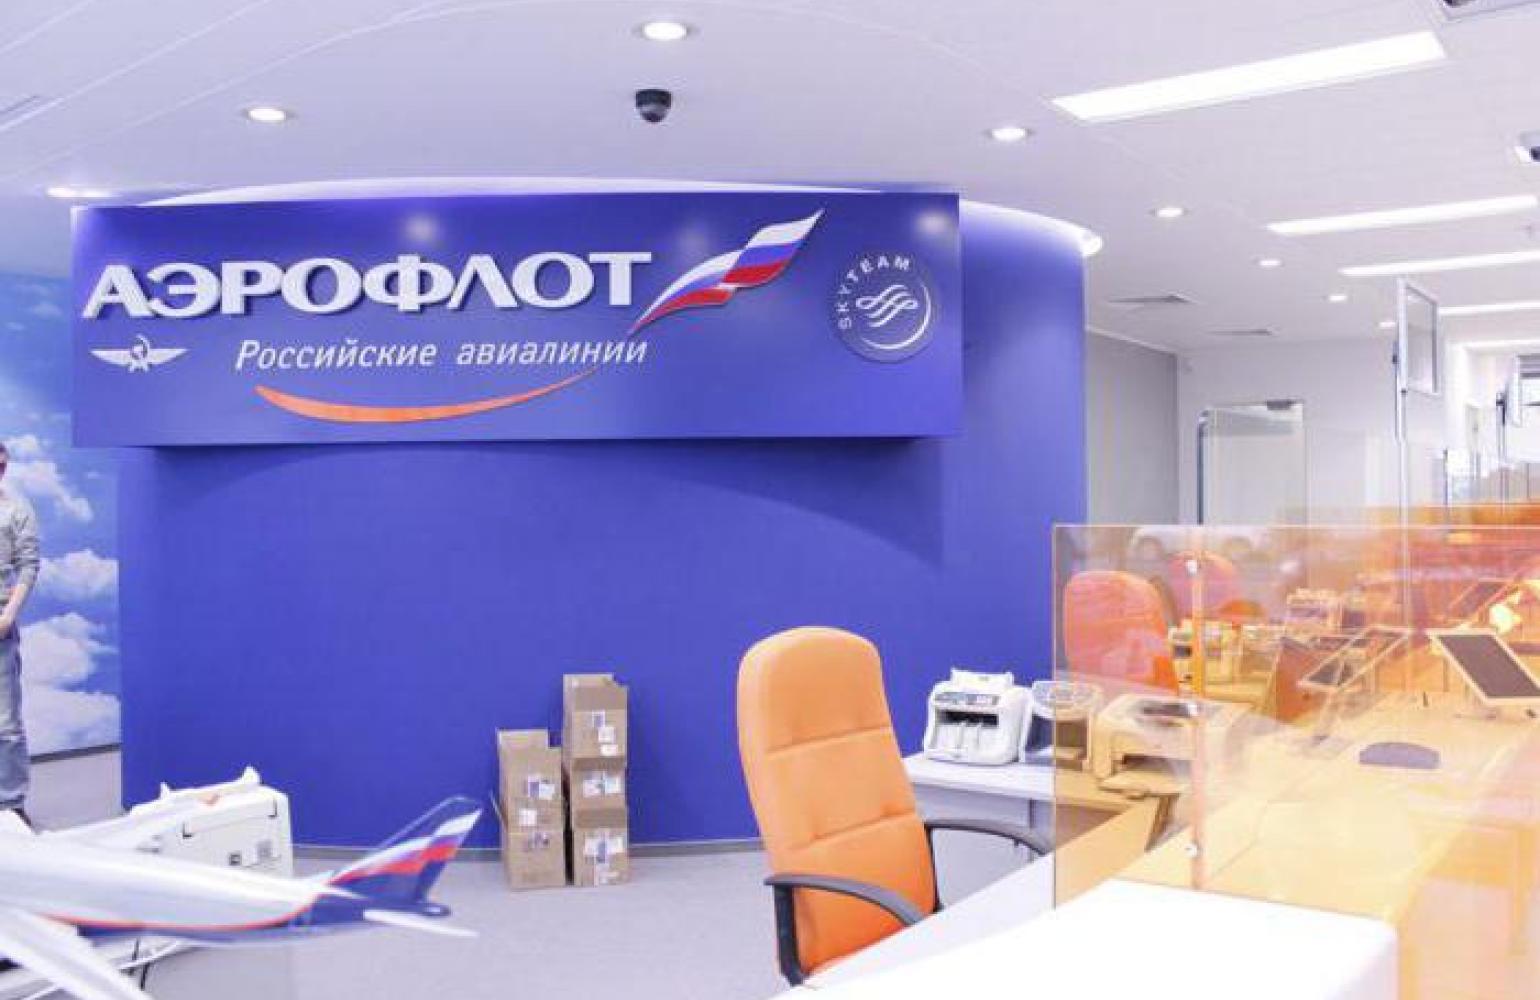 Сайте пао аэрофлот. Офис Аэрофлота. Офис компании Аэрофлот. Офис авиакомпании Аэрофлот в Москве. Кассы Аэрофлота.